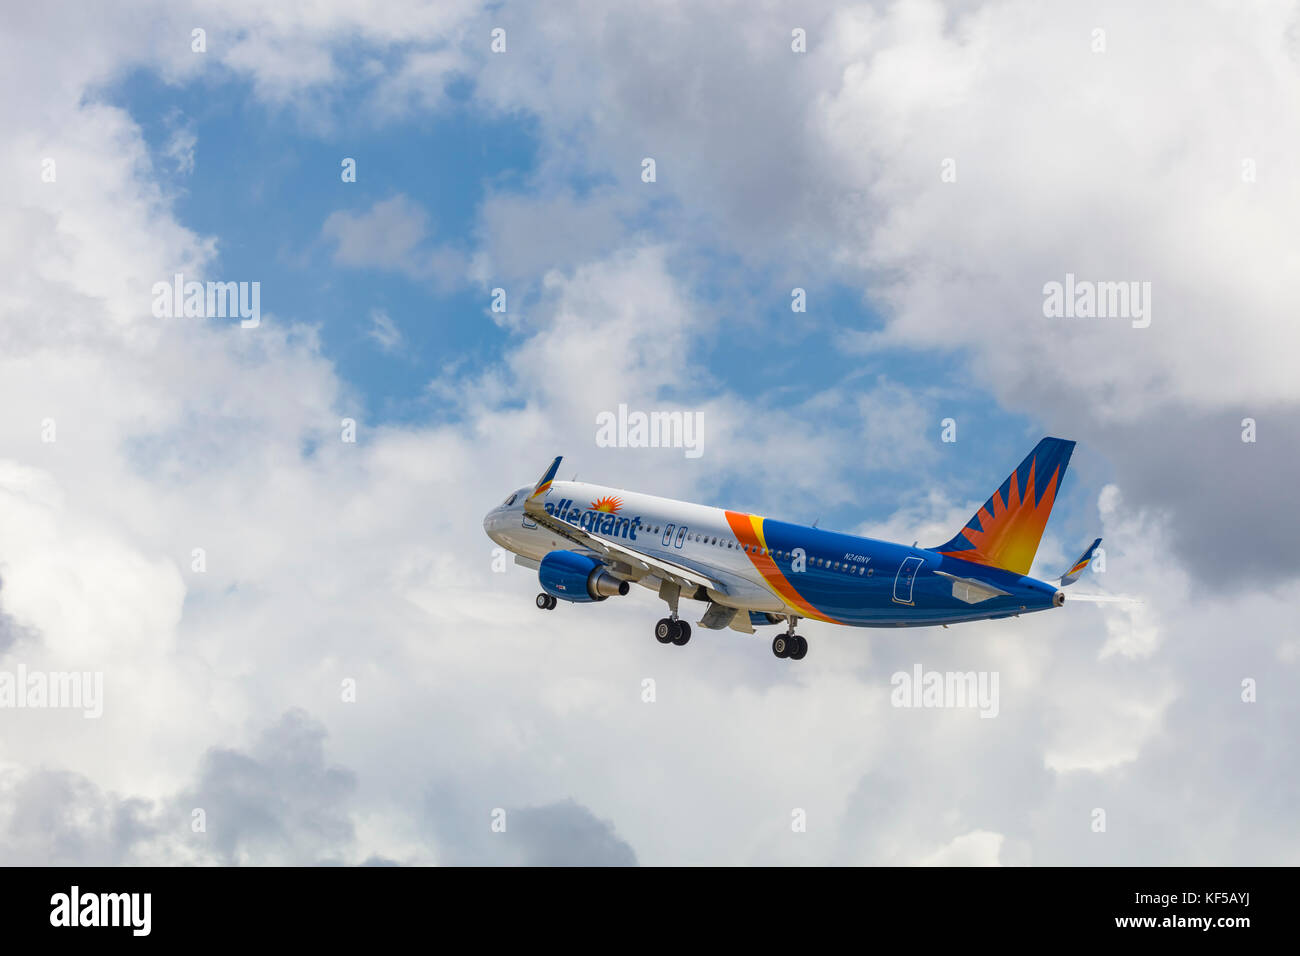 Avion de passagers commerciaux allegiant qui décolle de l'aéroport de Floride Punta Gorda Banque D'Images